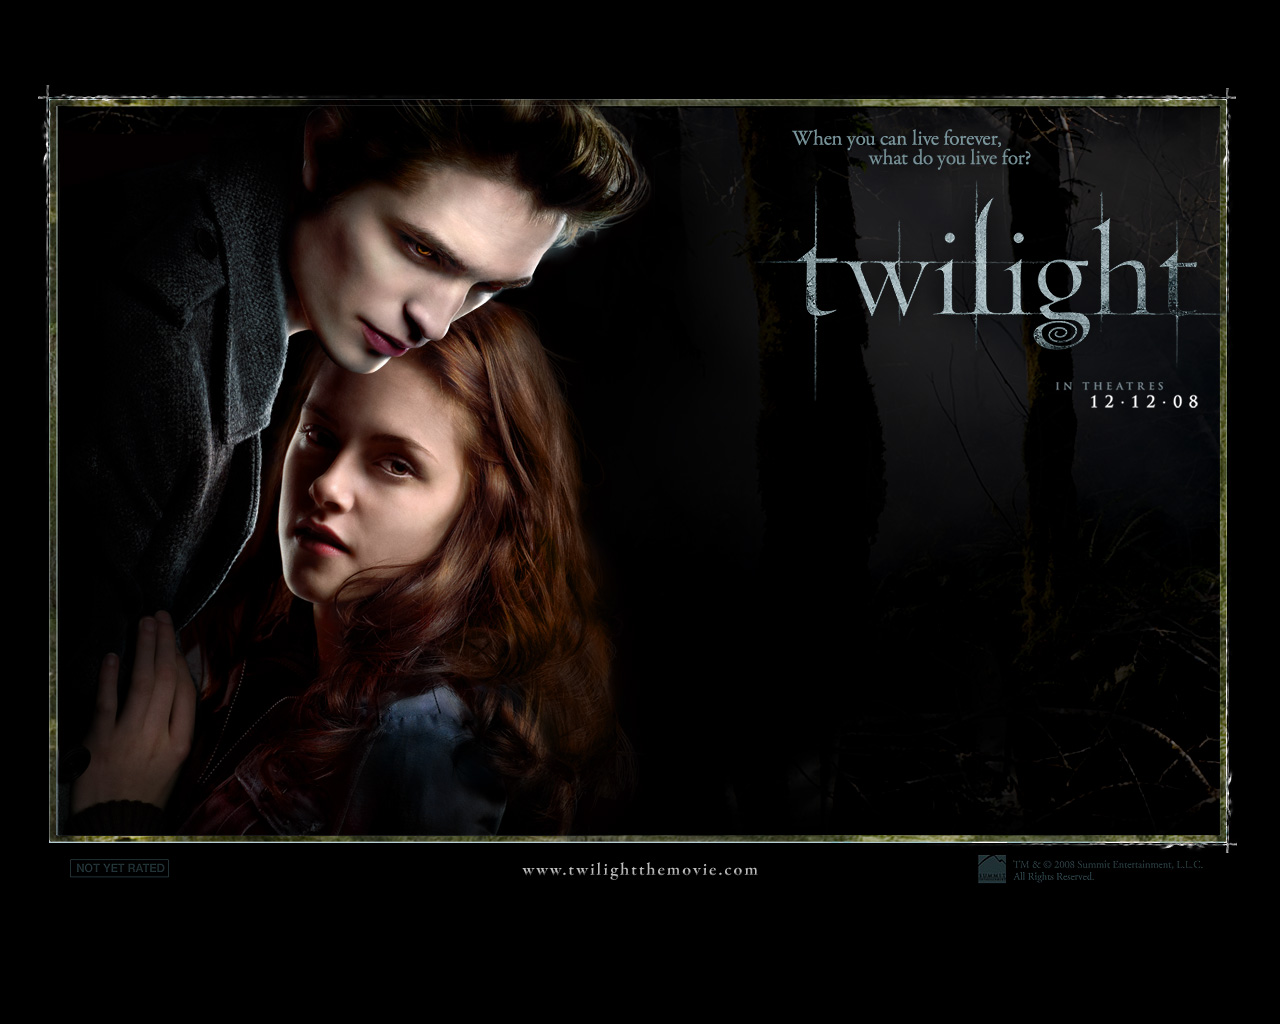 Twilight - Free desktop wallpapers download